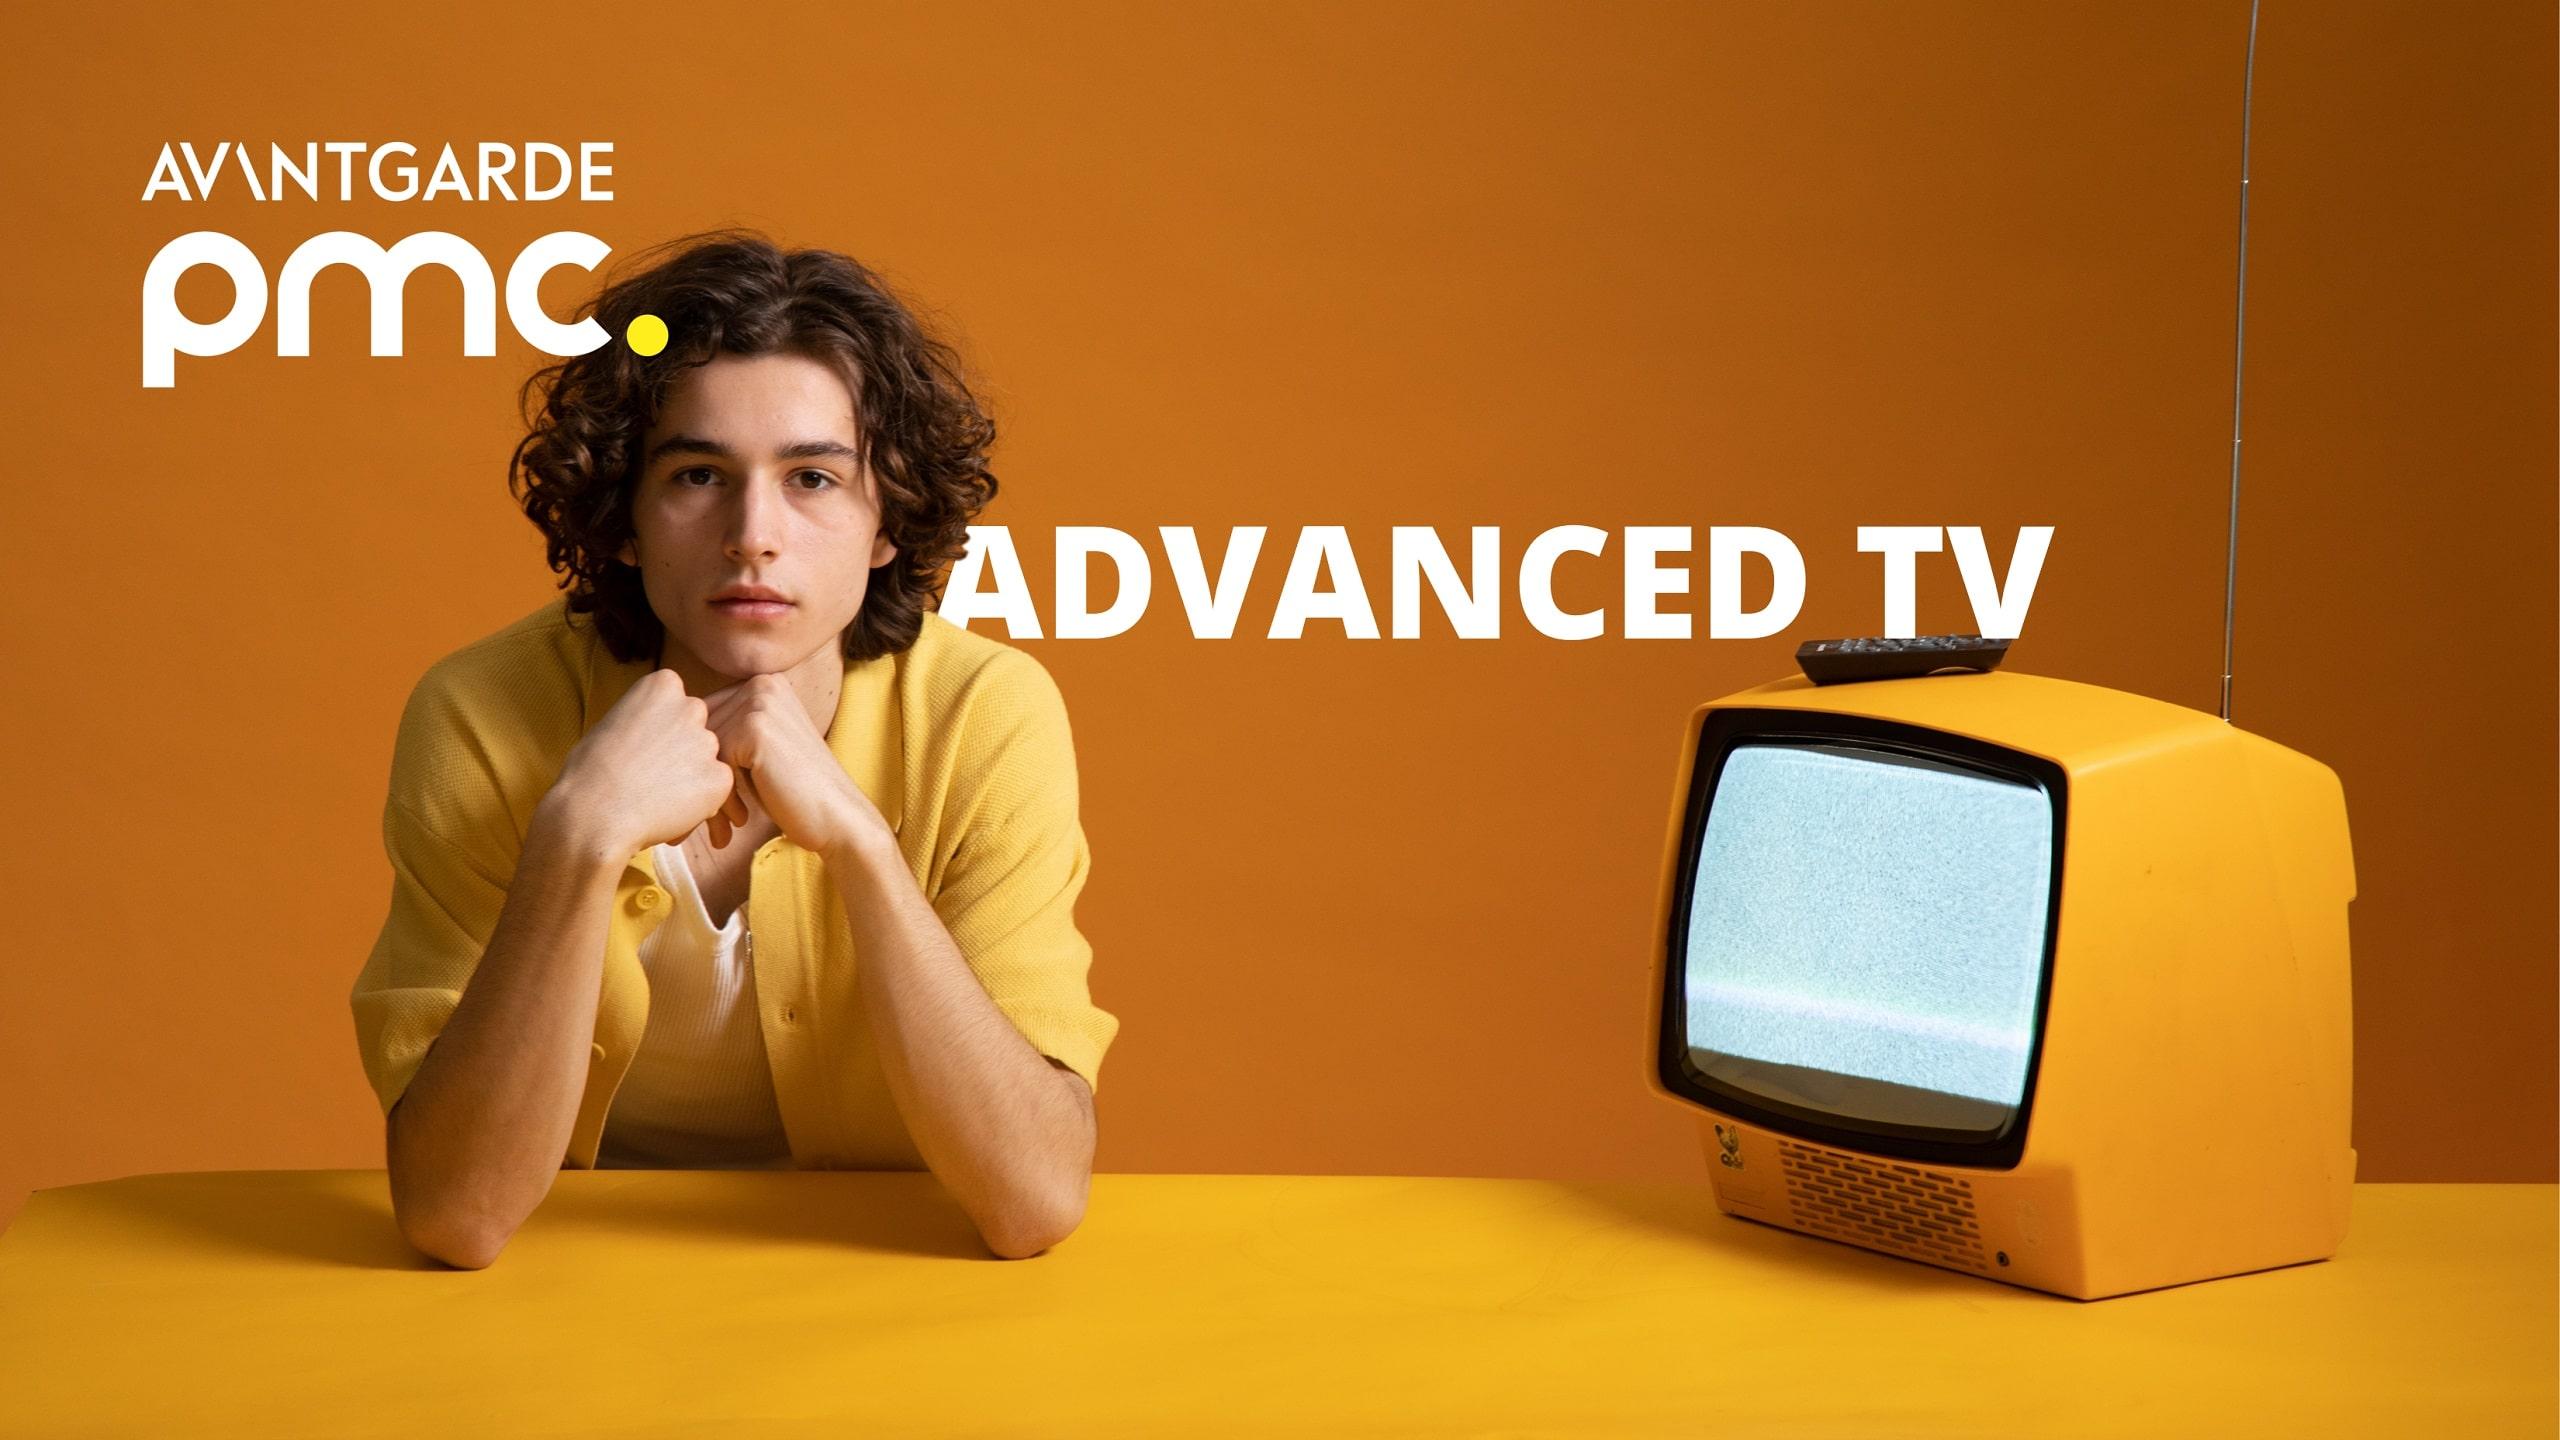 Advanced TV Blogbeitrag von AVANTGARDE PMC 